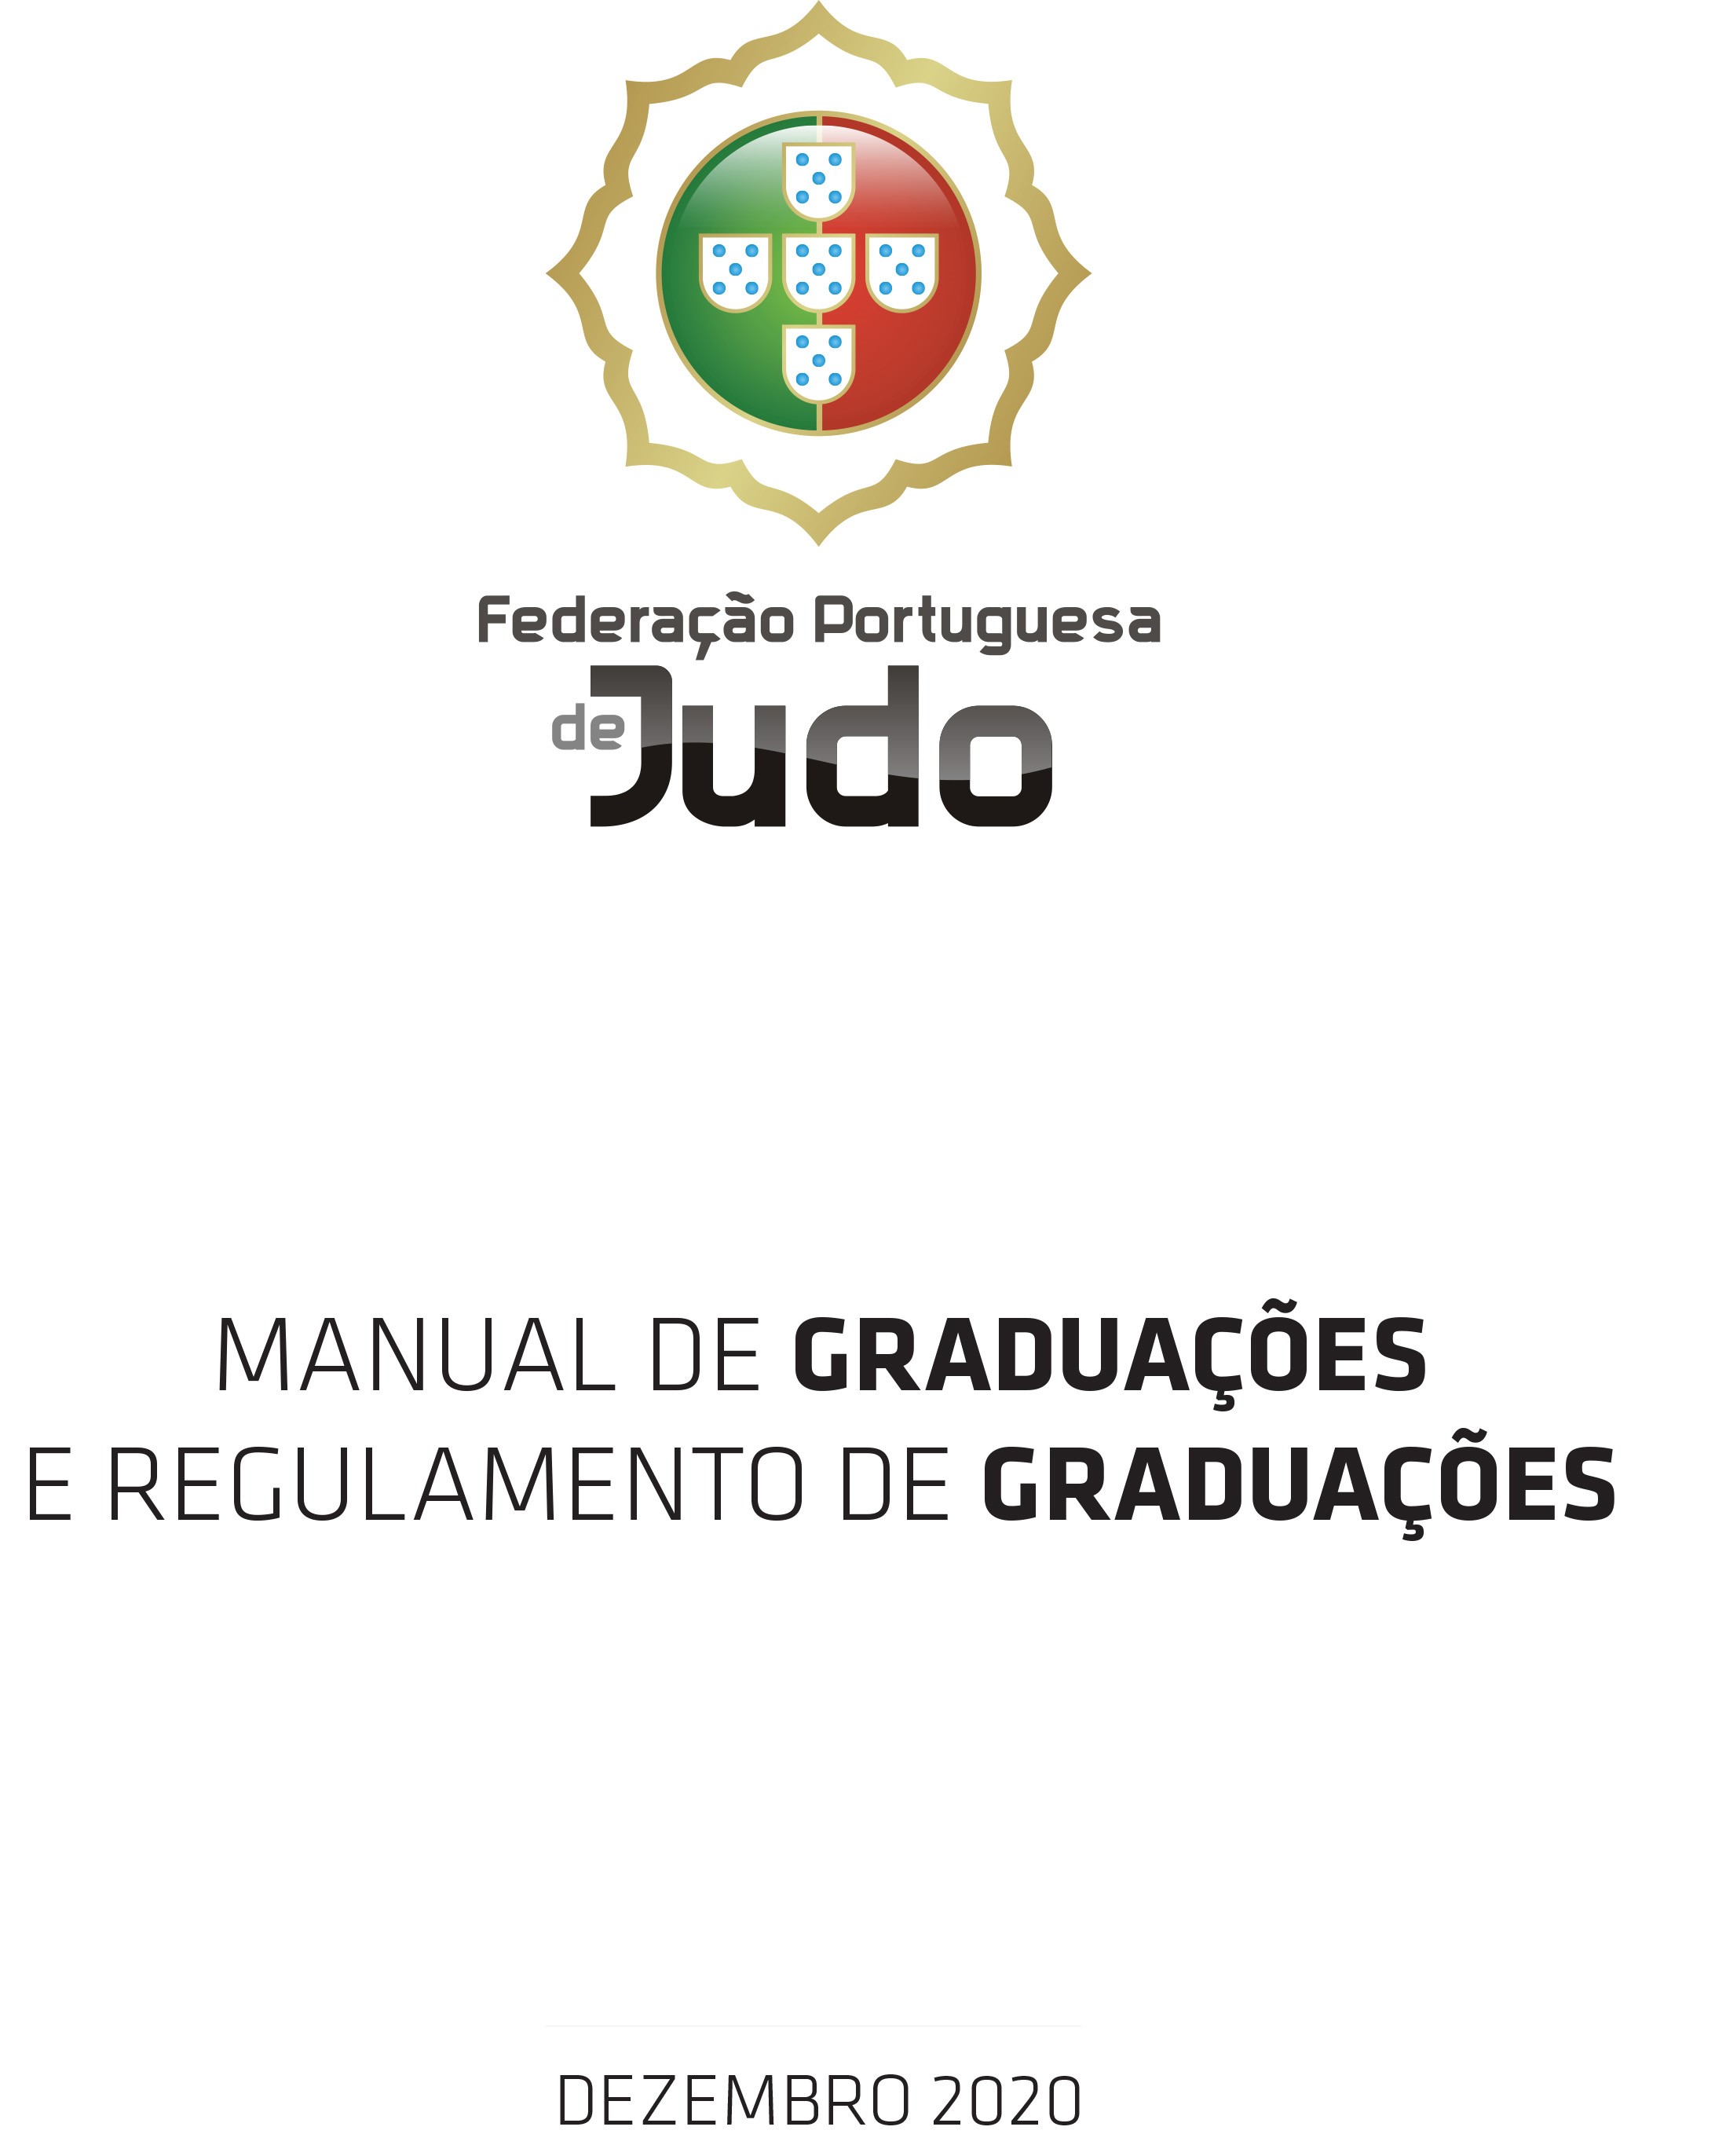 Logótipo da Federação Portuguesa de Judo e lettering com título do manual e regulamento.